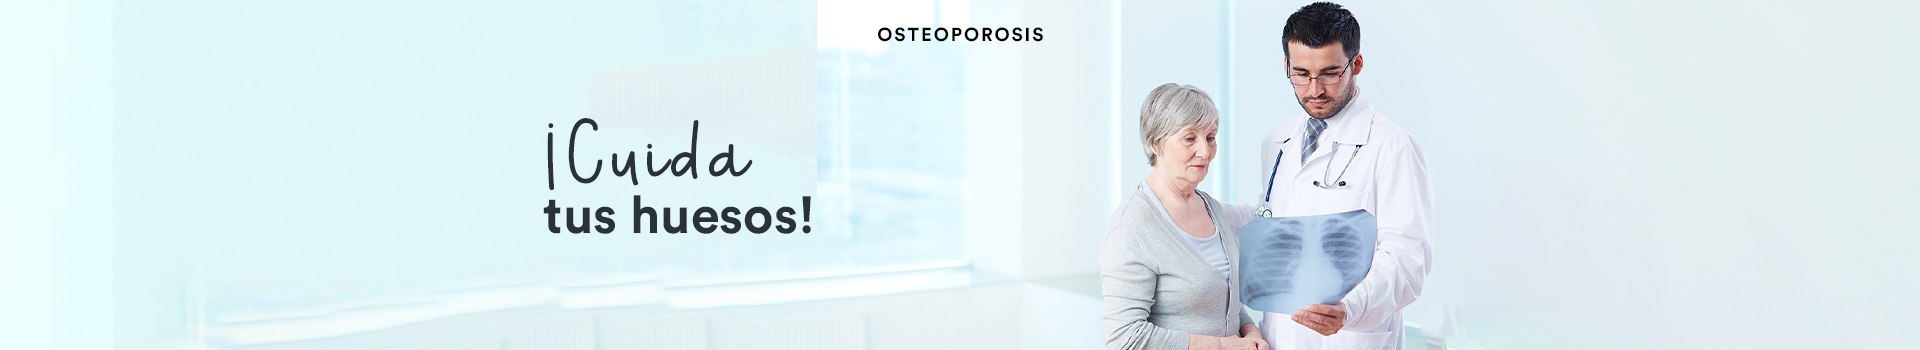 osteoporosis_sección búsqueda producto